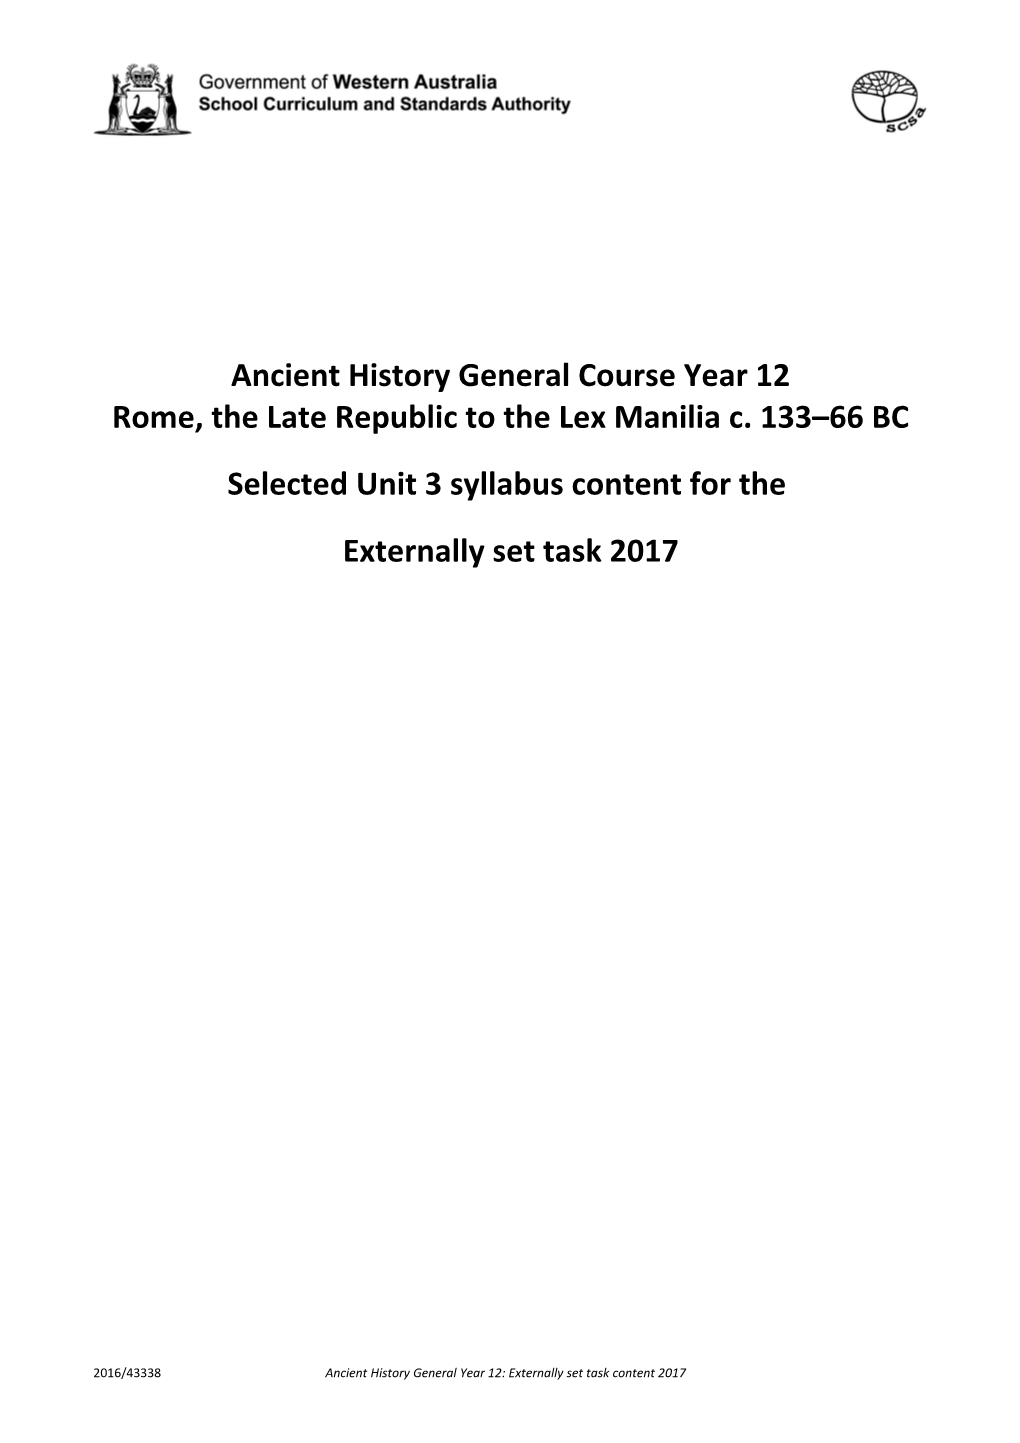 Rome, the Late Republic to the Lex Manilia C. 133 66 BC